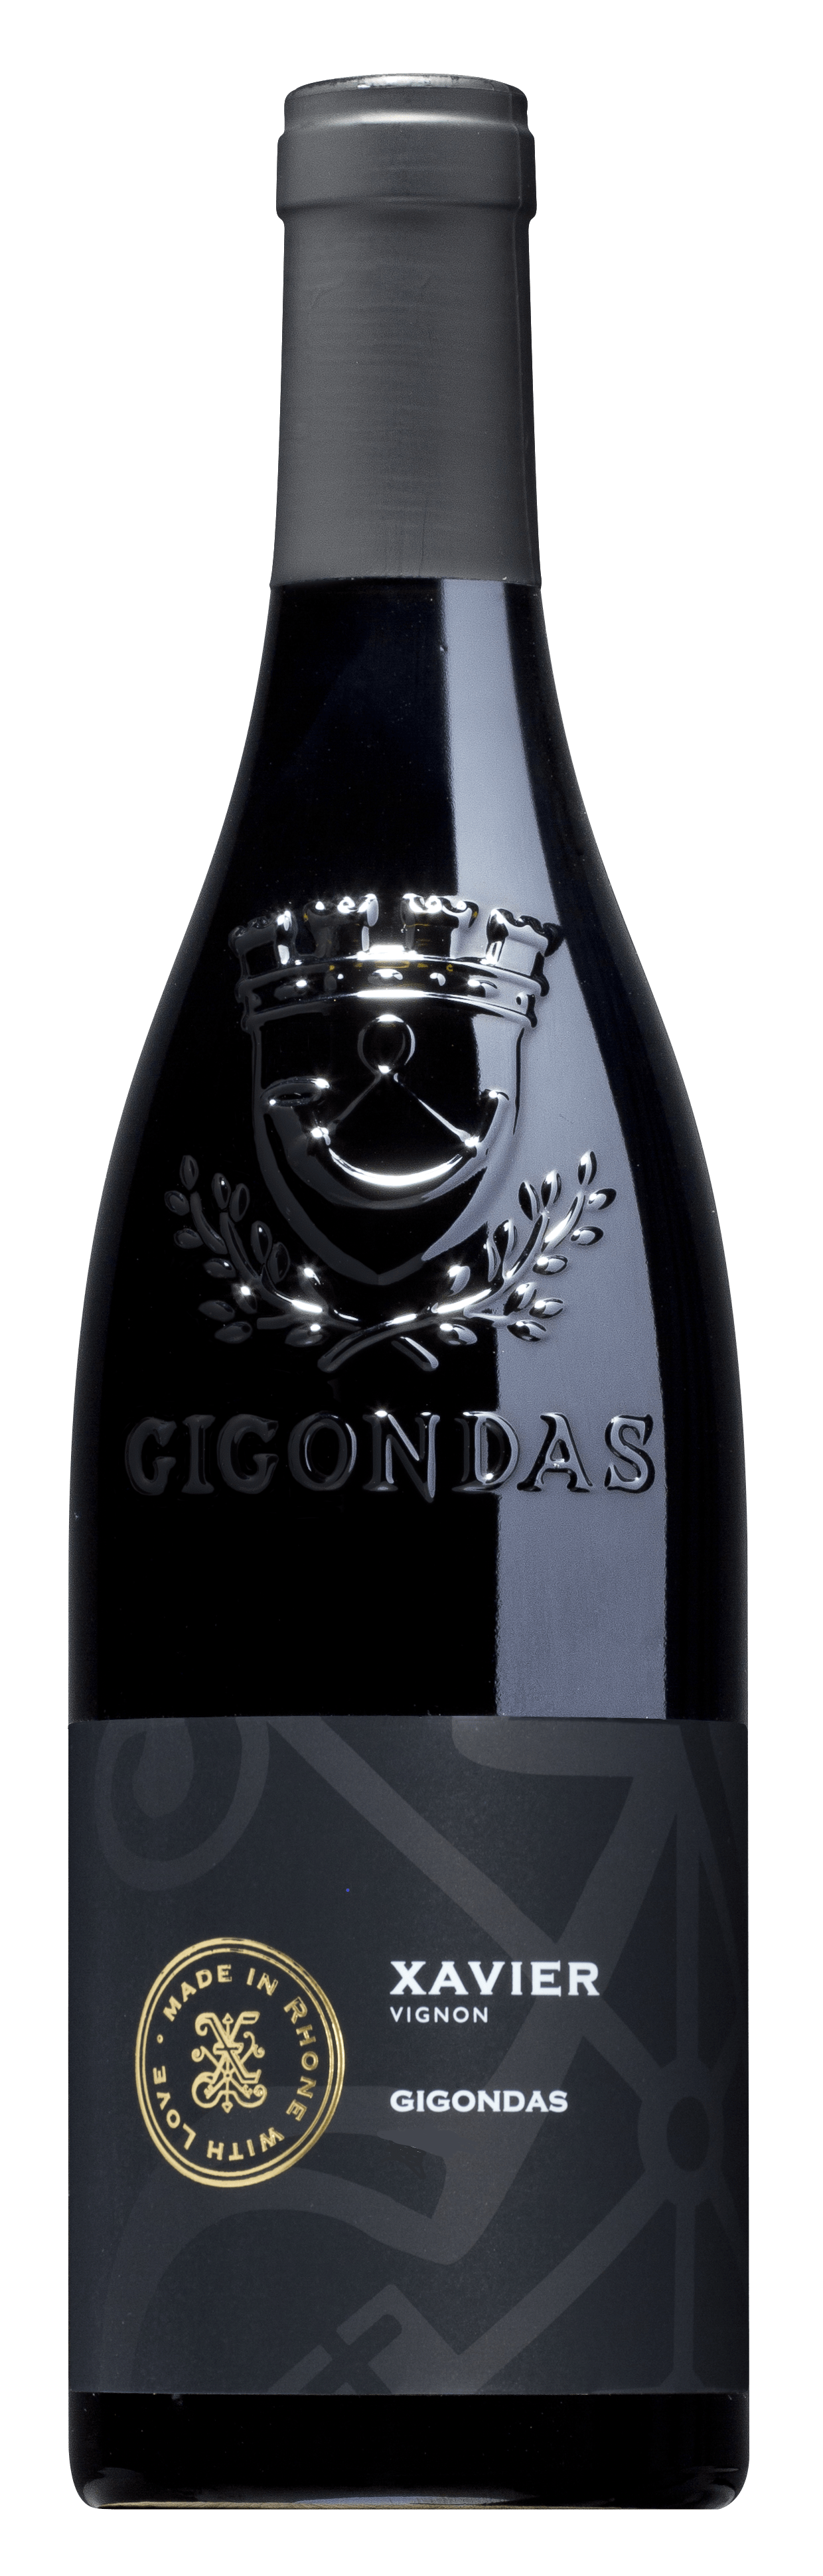 Gigondas 2019, Xavier Vignon (1x75cl) - TwoMoreGlasses.com